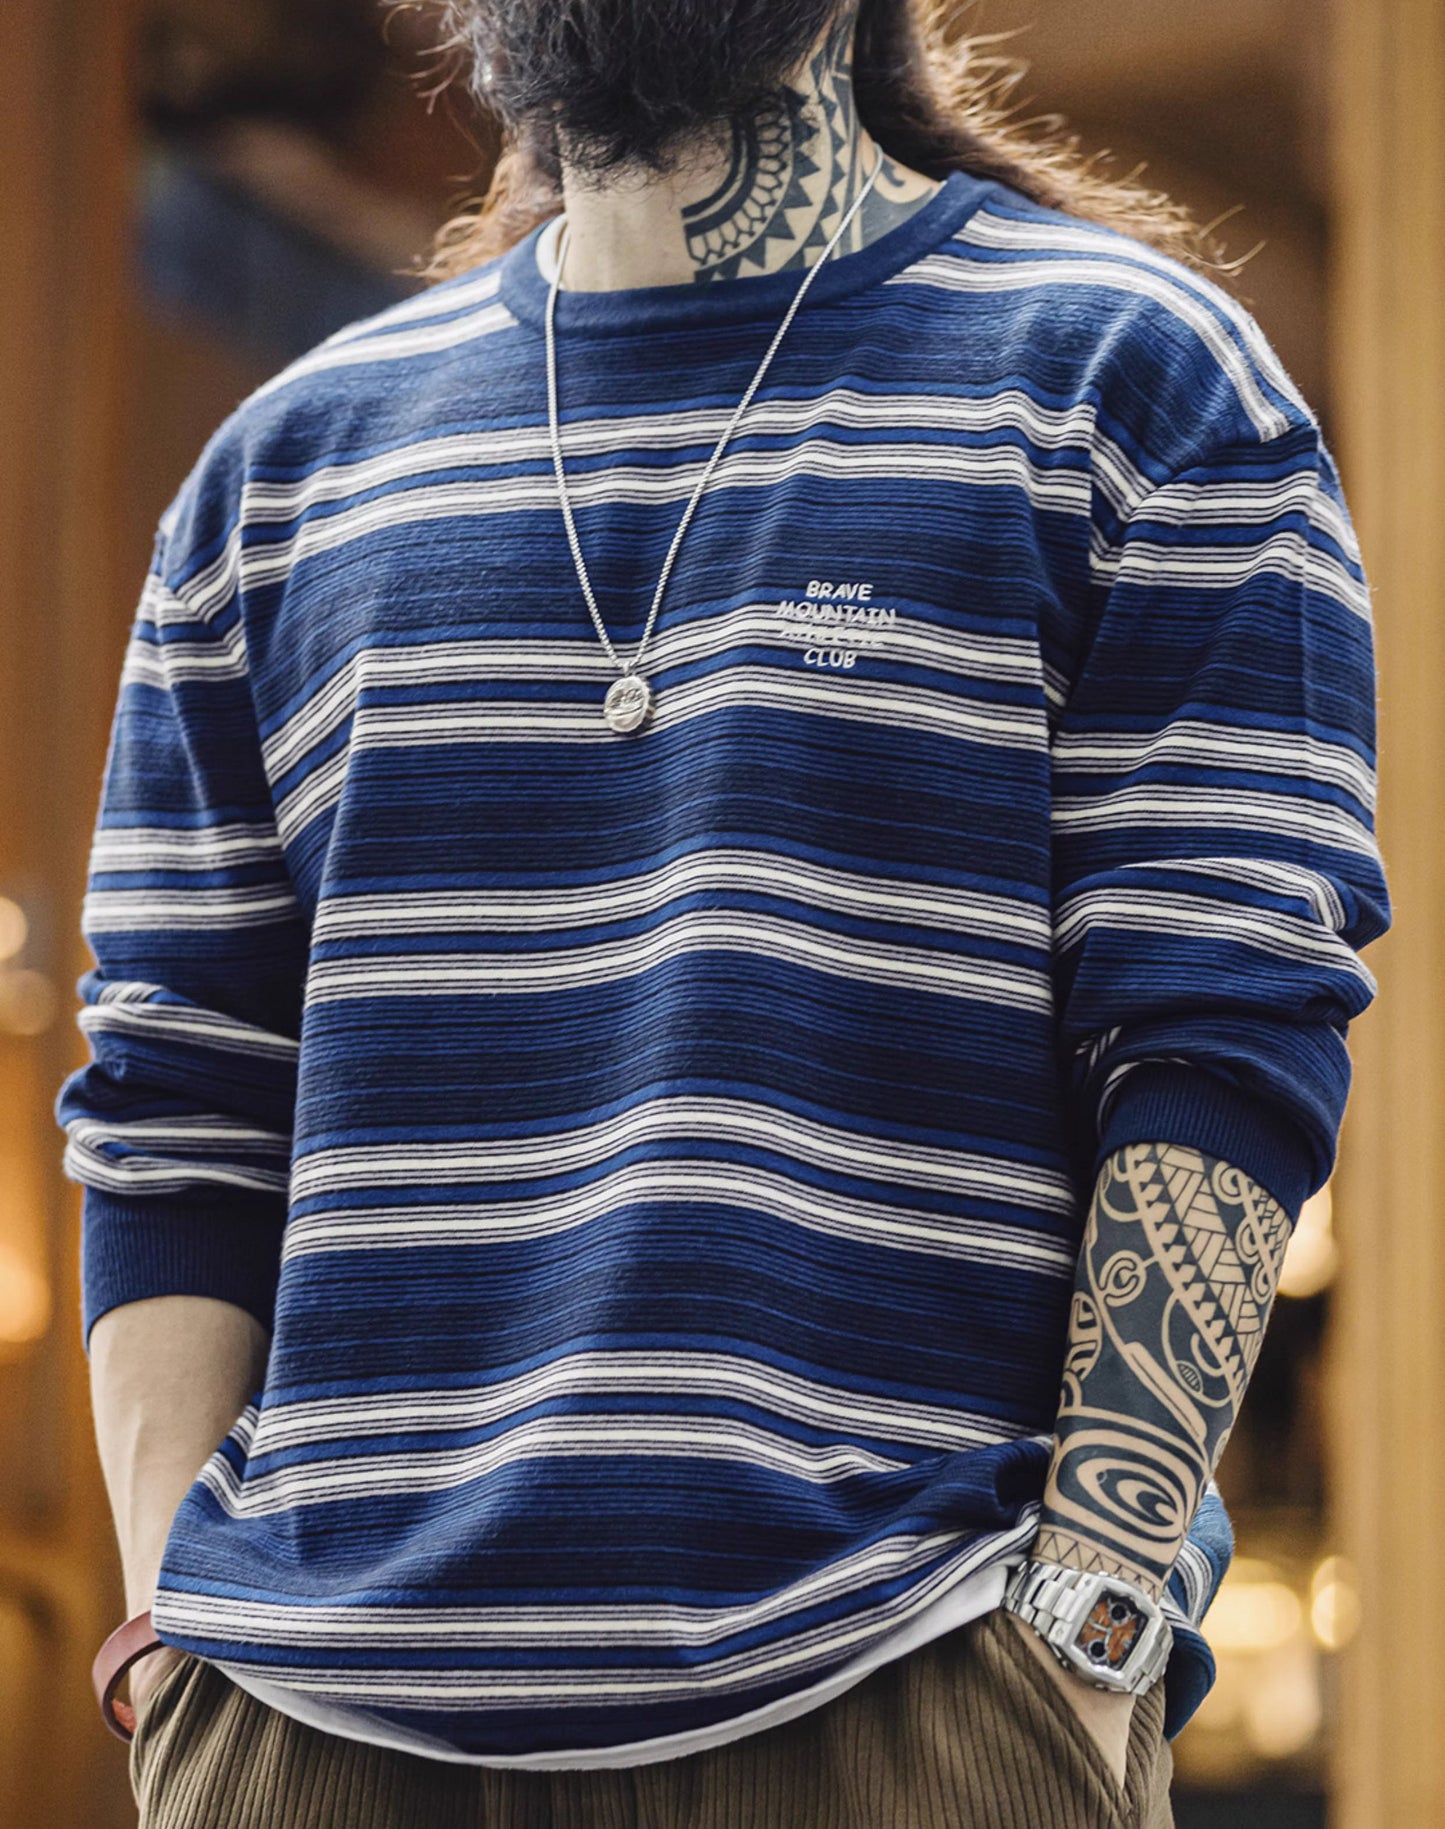 American Striped City Boy Blended Off-Shoulder Men's Sweater